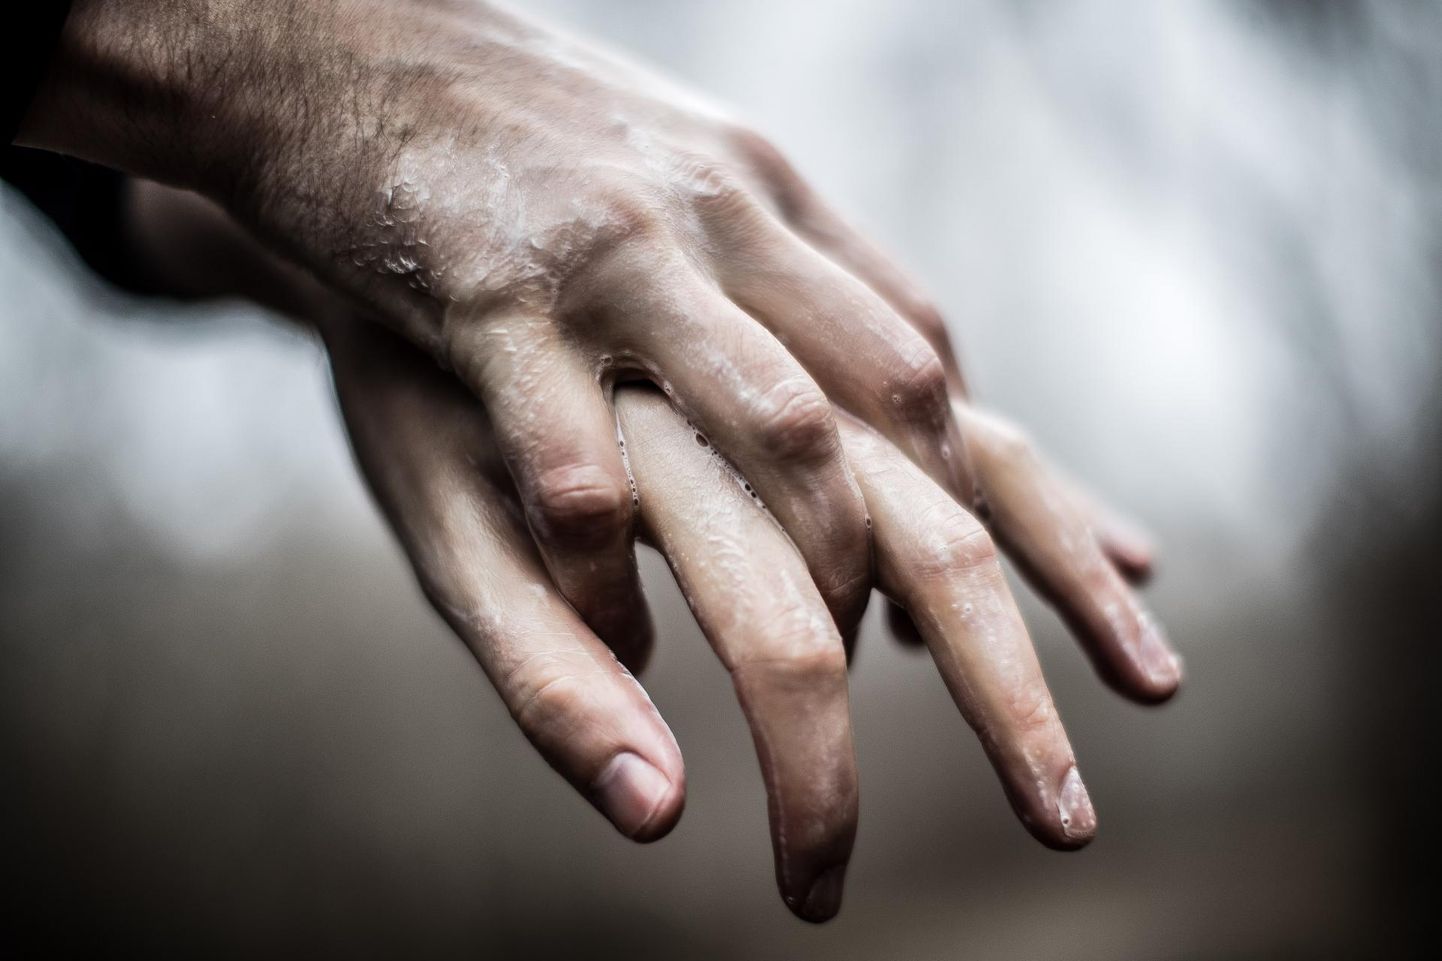 Koroonaviiruse leviku takistamiseks tuleb järgida kätehügieeni ehk teisisõnu: käsi tuleb pesta tihti ja 40-60 sekundi jooksul. Kätepesuks tuleb kasutada sooja vett ja seepi; avalikes kohtades kasutada alkoholipõhist käte desinfitseerimisvahendit. Illustreeriv foto käsi pesevast inimesest.